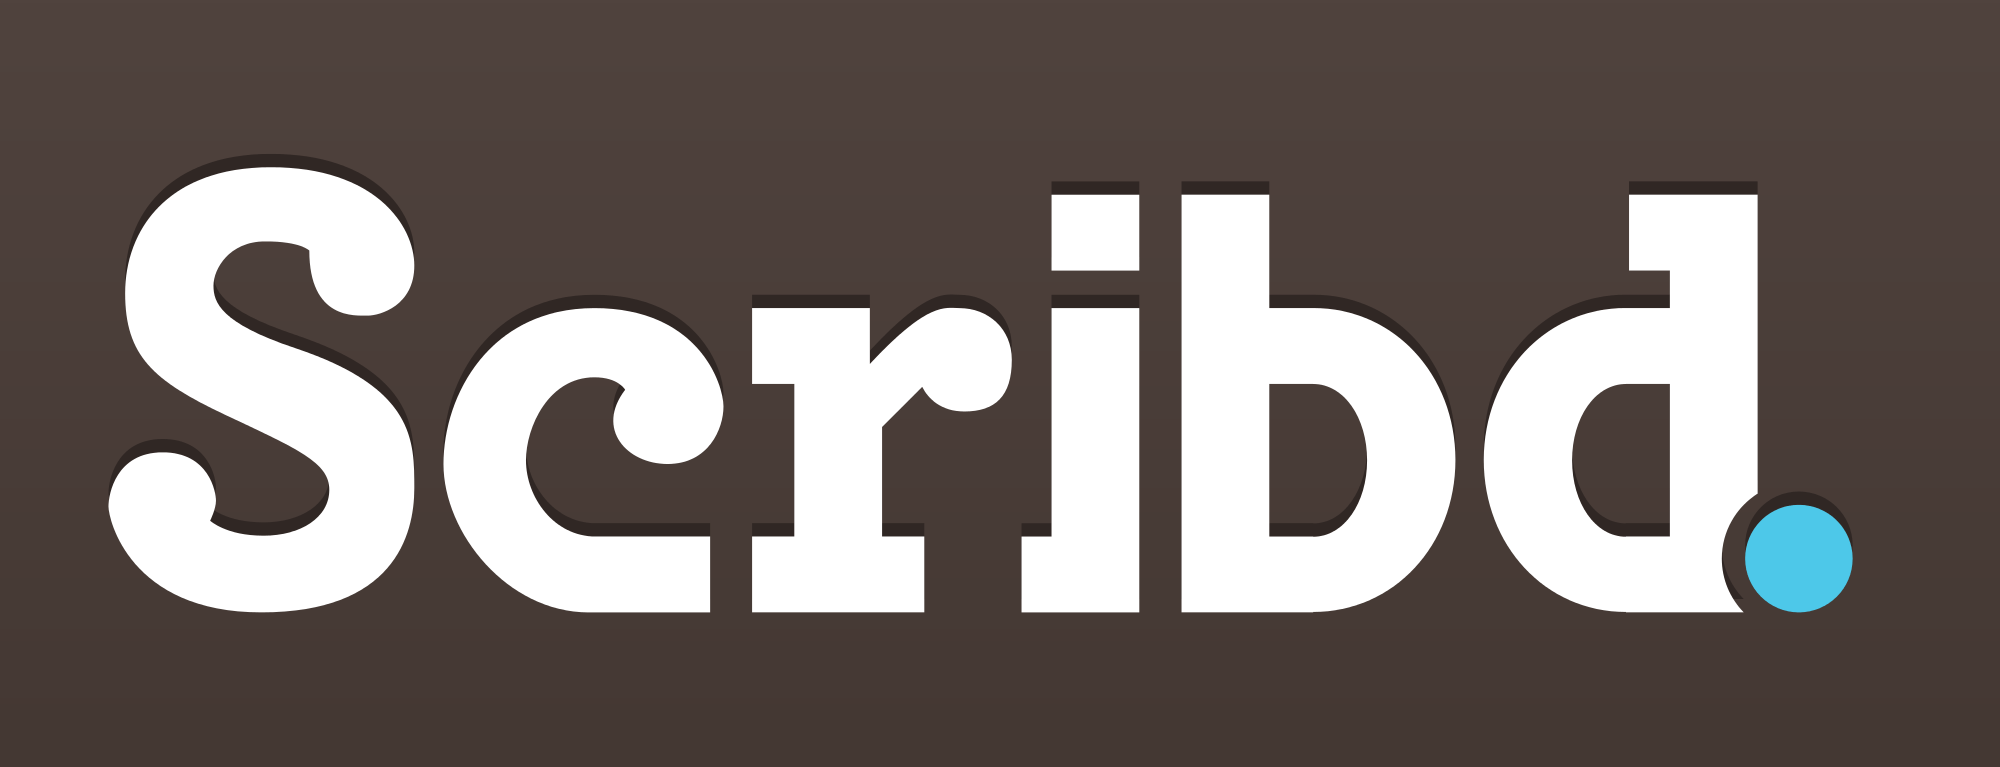 Scribd.com Logo - File:Scribd-Logo-Negative-brown-Vector.svg - Wikimedia Commons